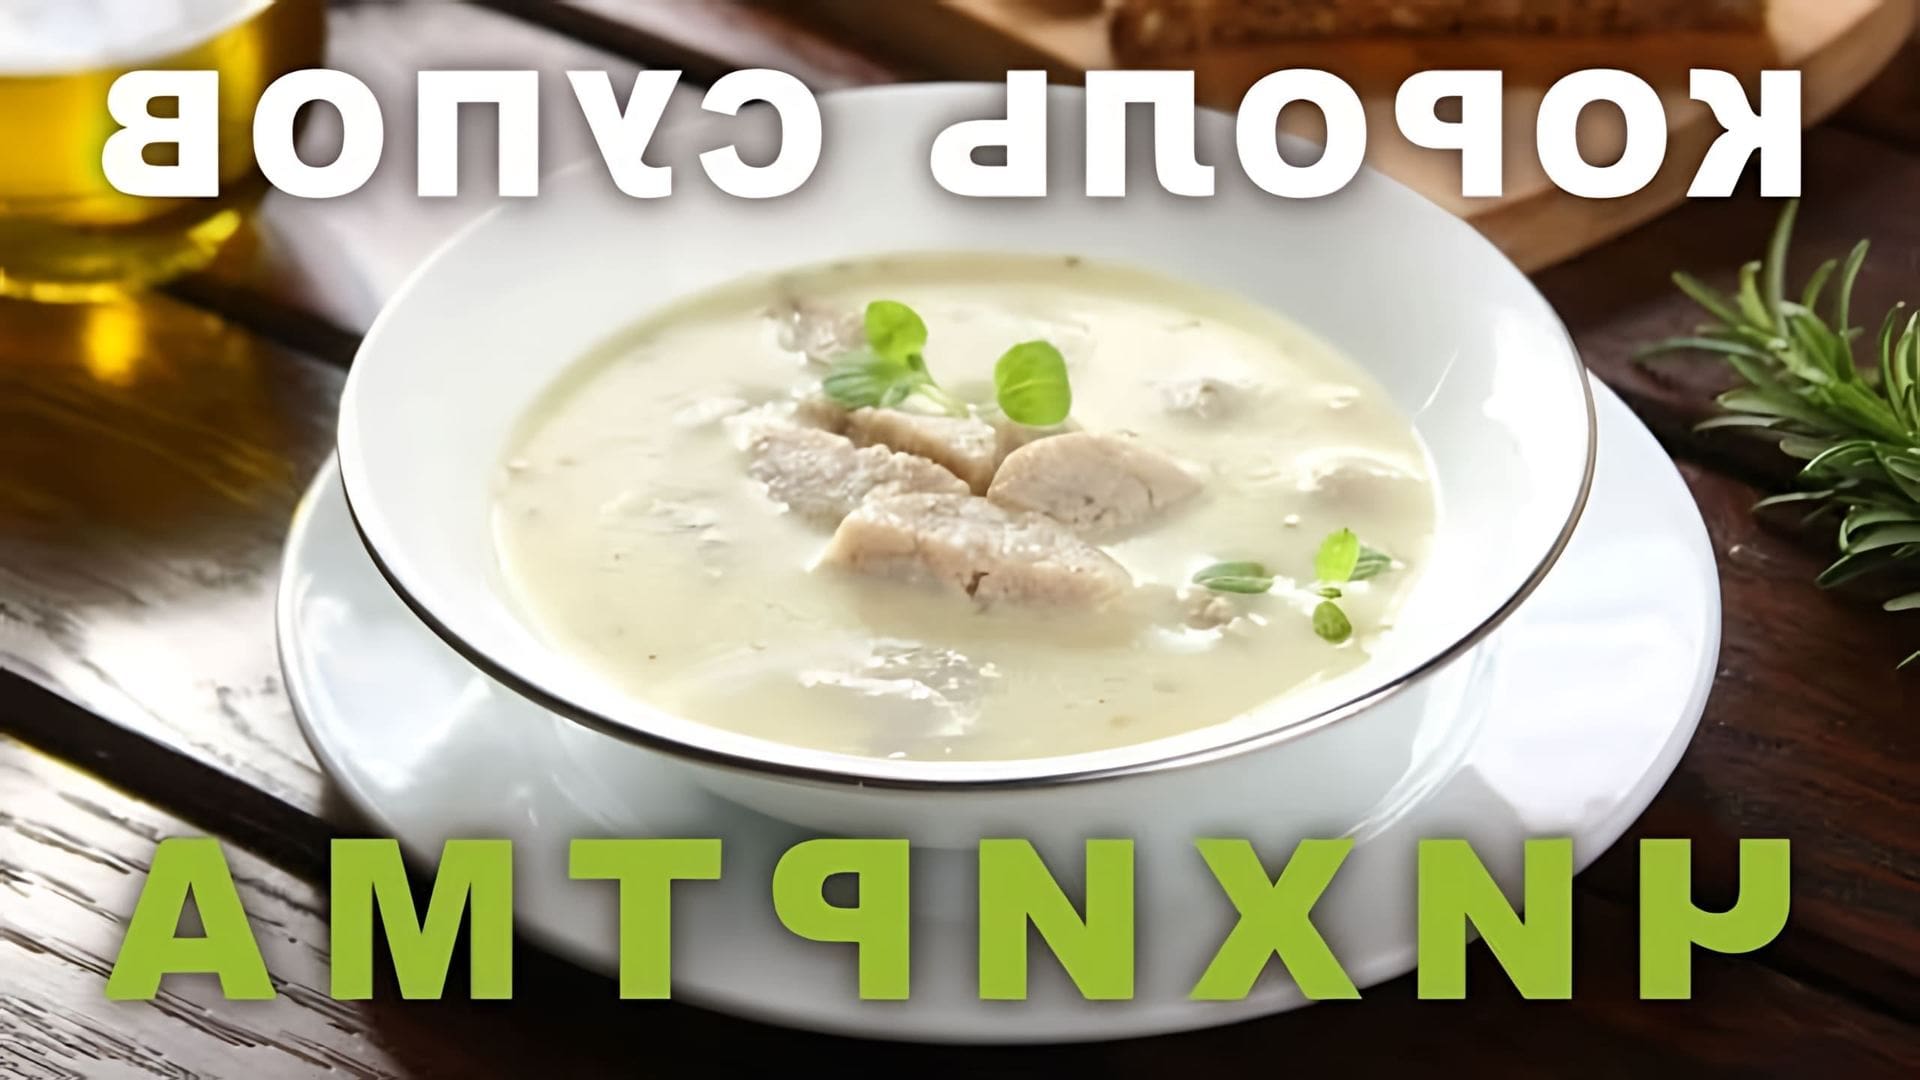 В этом видео демонстрируется процесс приготовления грузинского супа под названием "чихиртма"